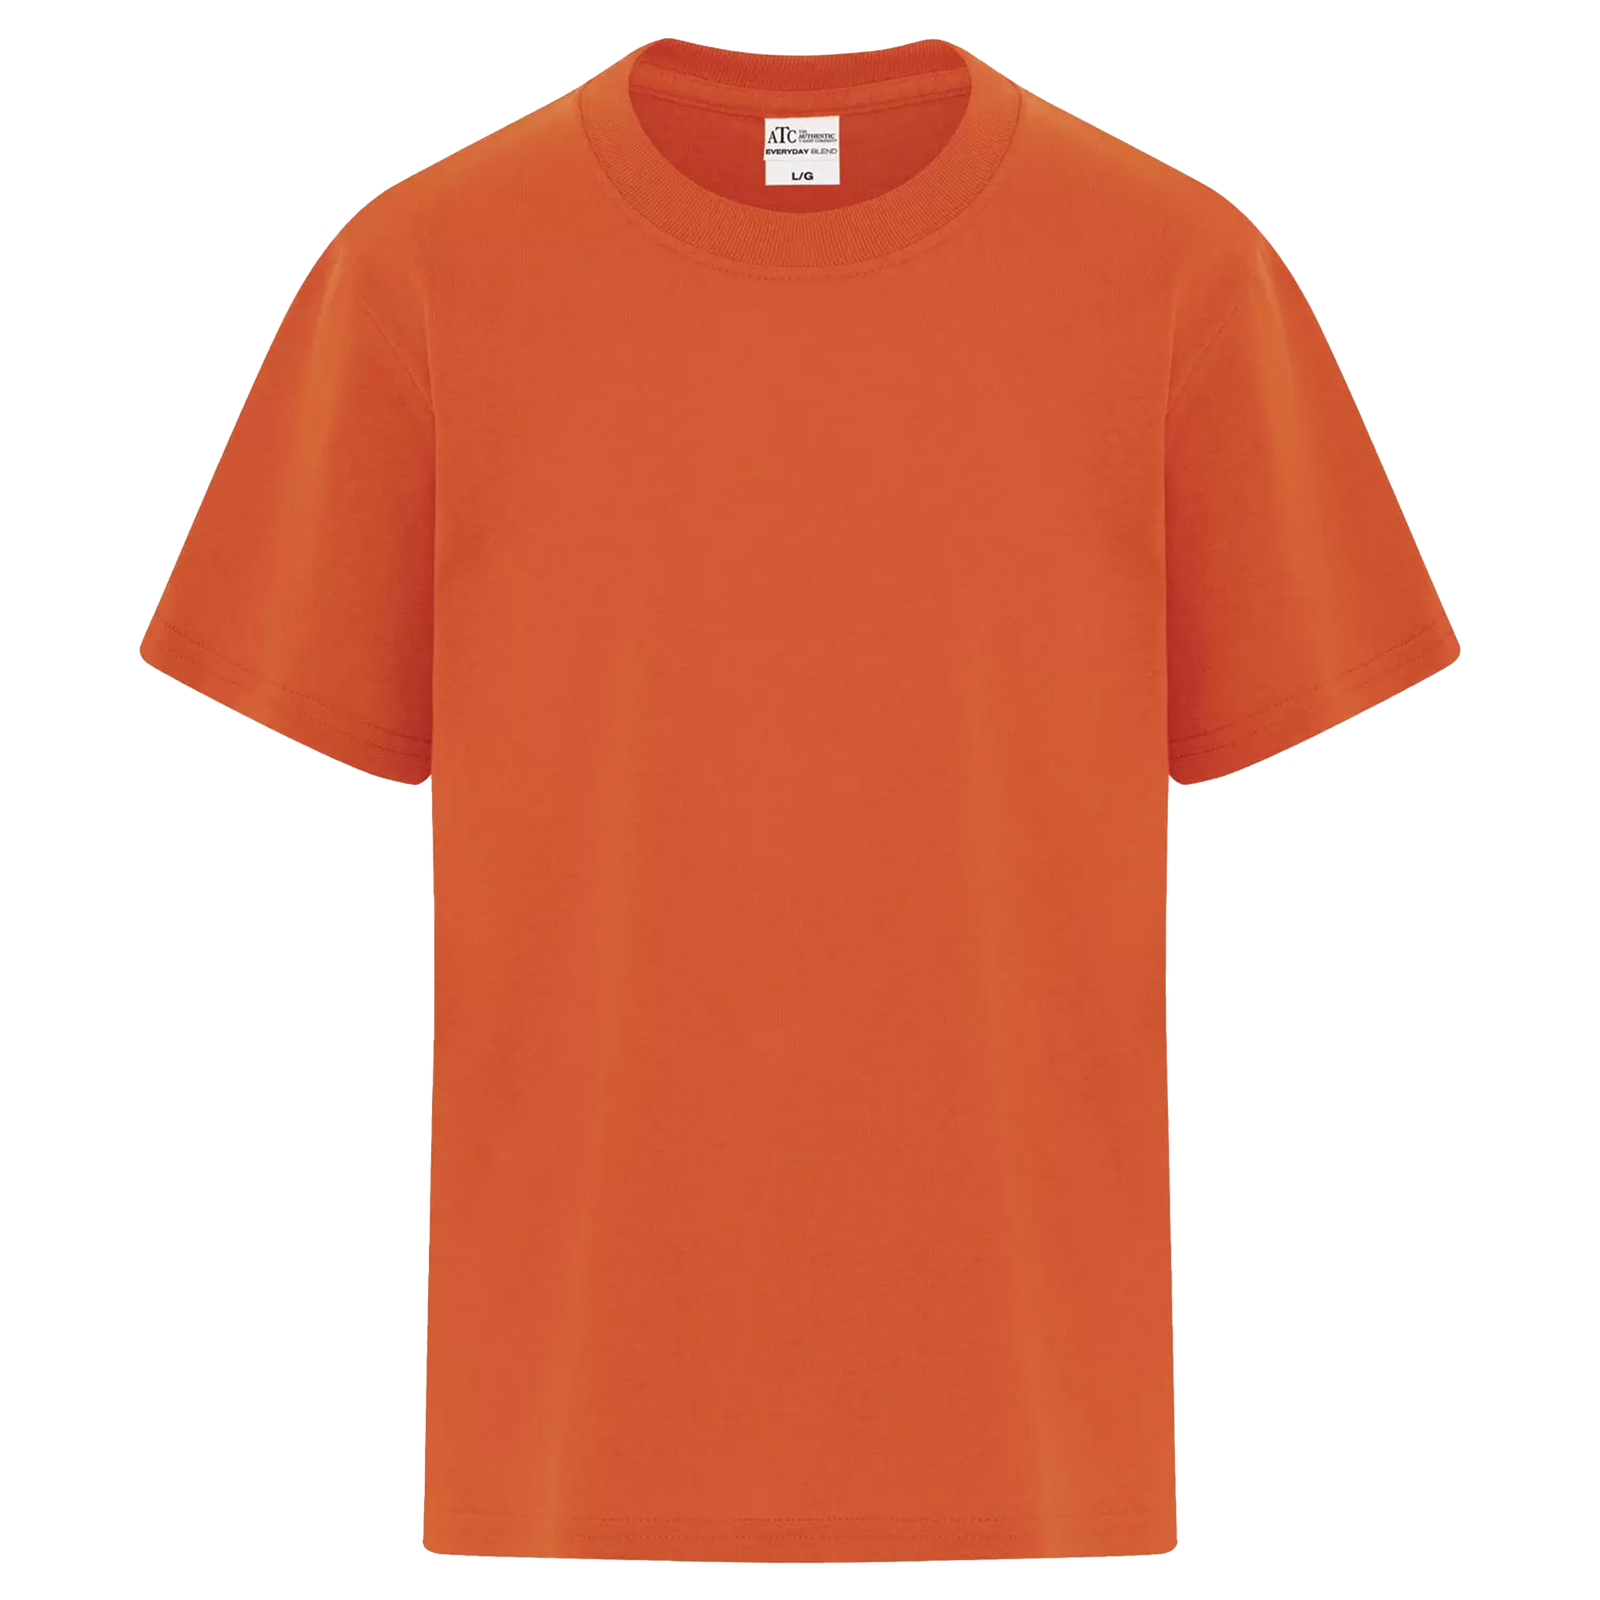 ATC Everyday Blend Side Seam Youth T-Shirt - Unisex Youth Sizing XS-XL - Orange